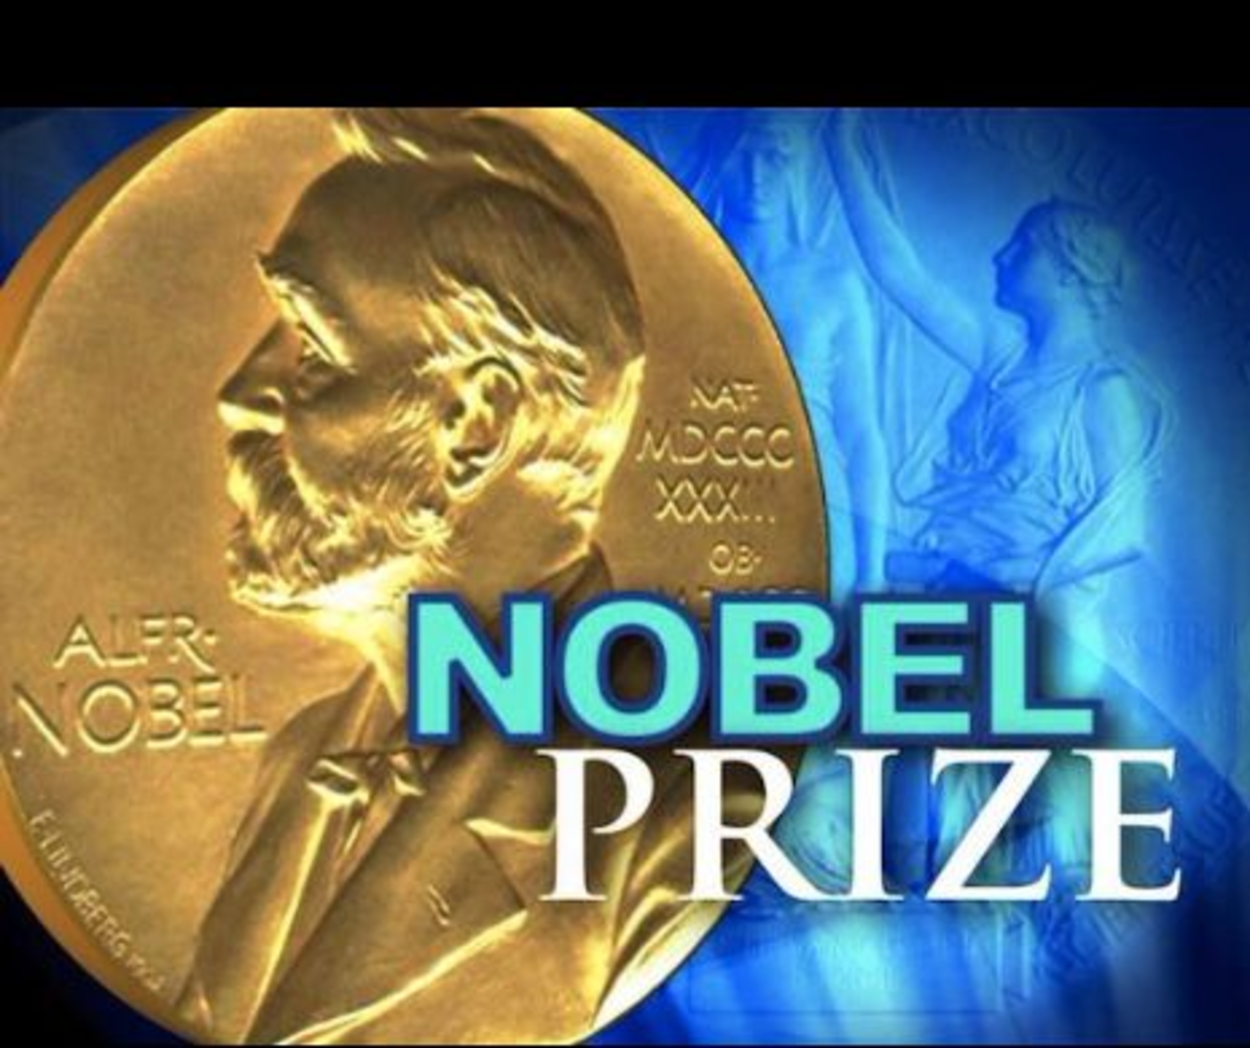 Ultimul premiu anunțat: Nobel pentru economie este acordat pentru combaterea crizelor financiare, o temă de actualitate